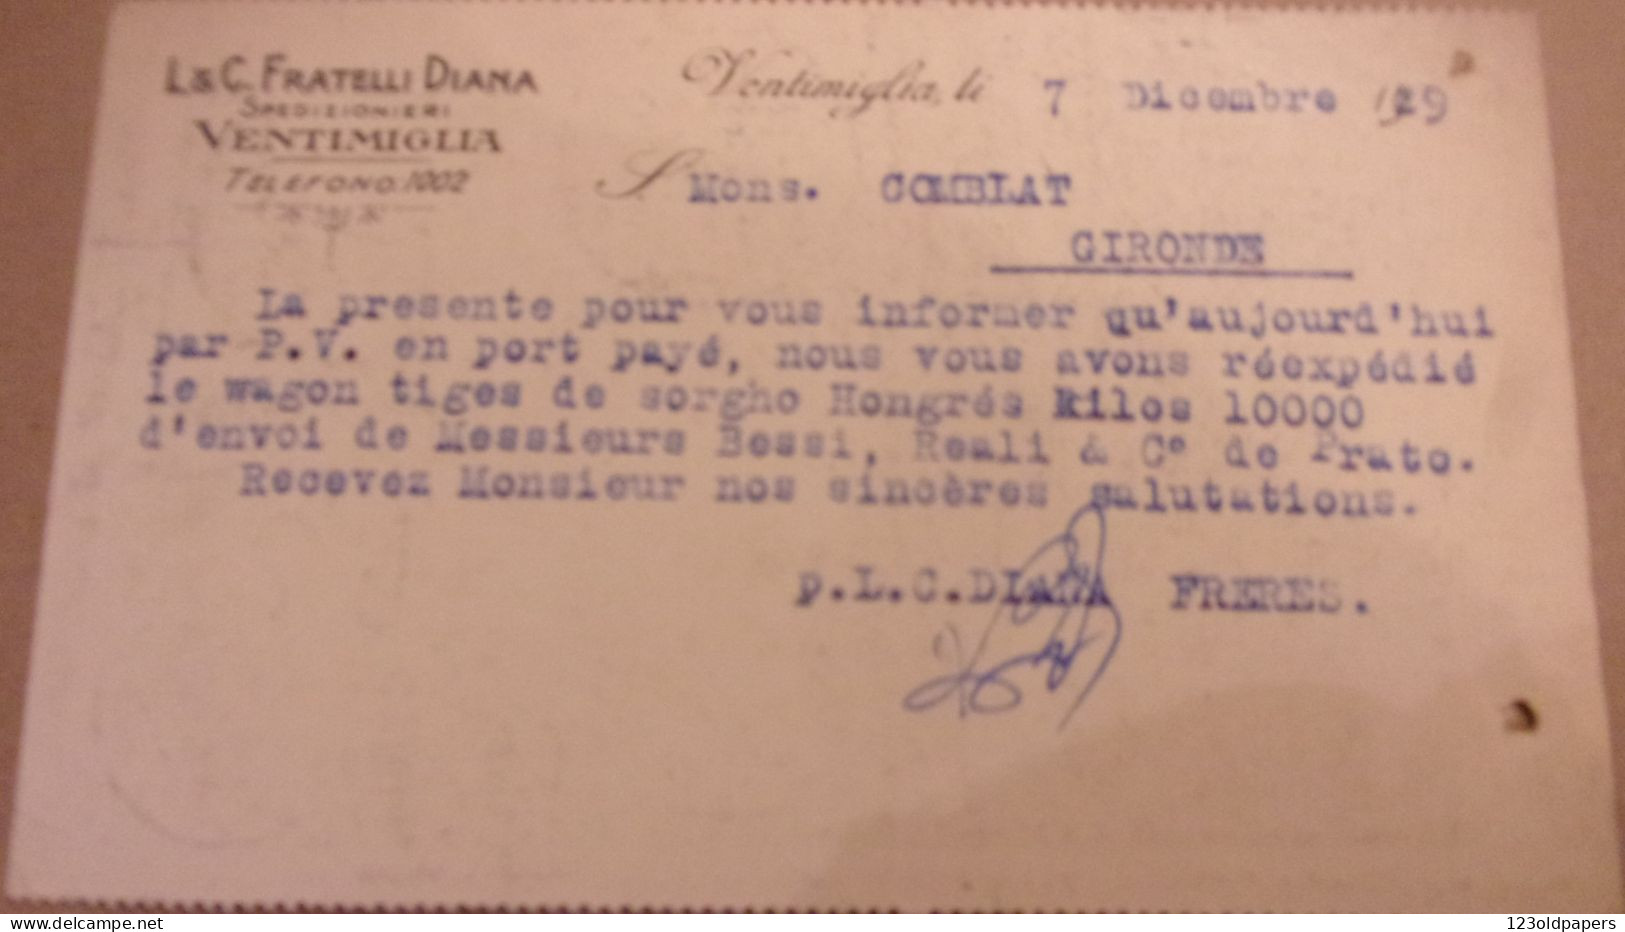 VENTIMIGLIA - IMPERIA - CARTOLINA COMMERCIALE "L.& C. FRATELLI DIANA" TRASPORTI INTERNAZIONALI - 1929 - Marcofilía